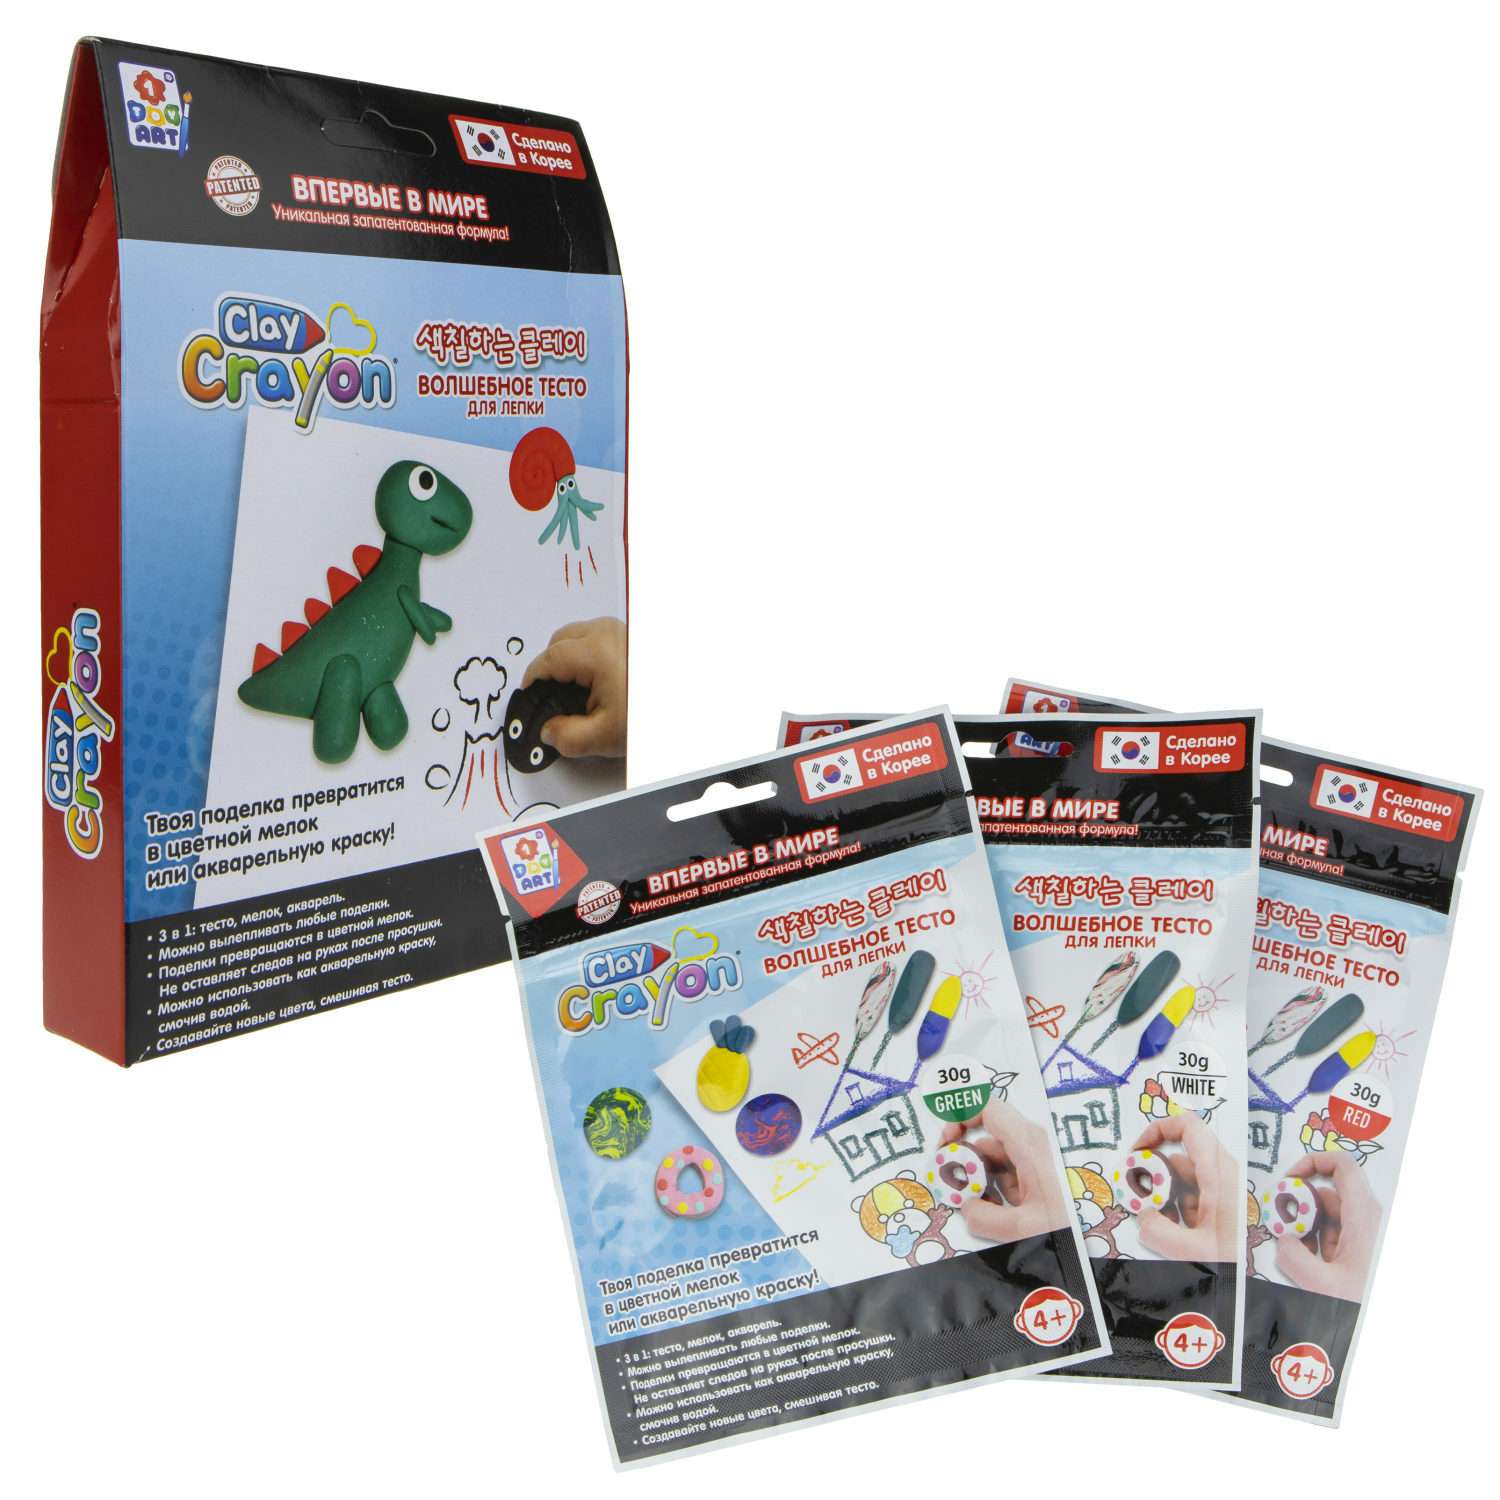 Наборы для творчества Clay Crayon Тесто мелки Динозавр 3 цвета по 30 гр в коробке 139x19x3 см - фото 1